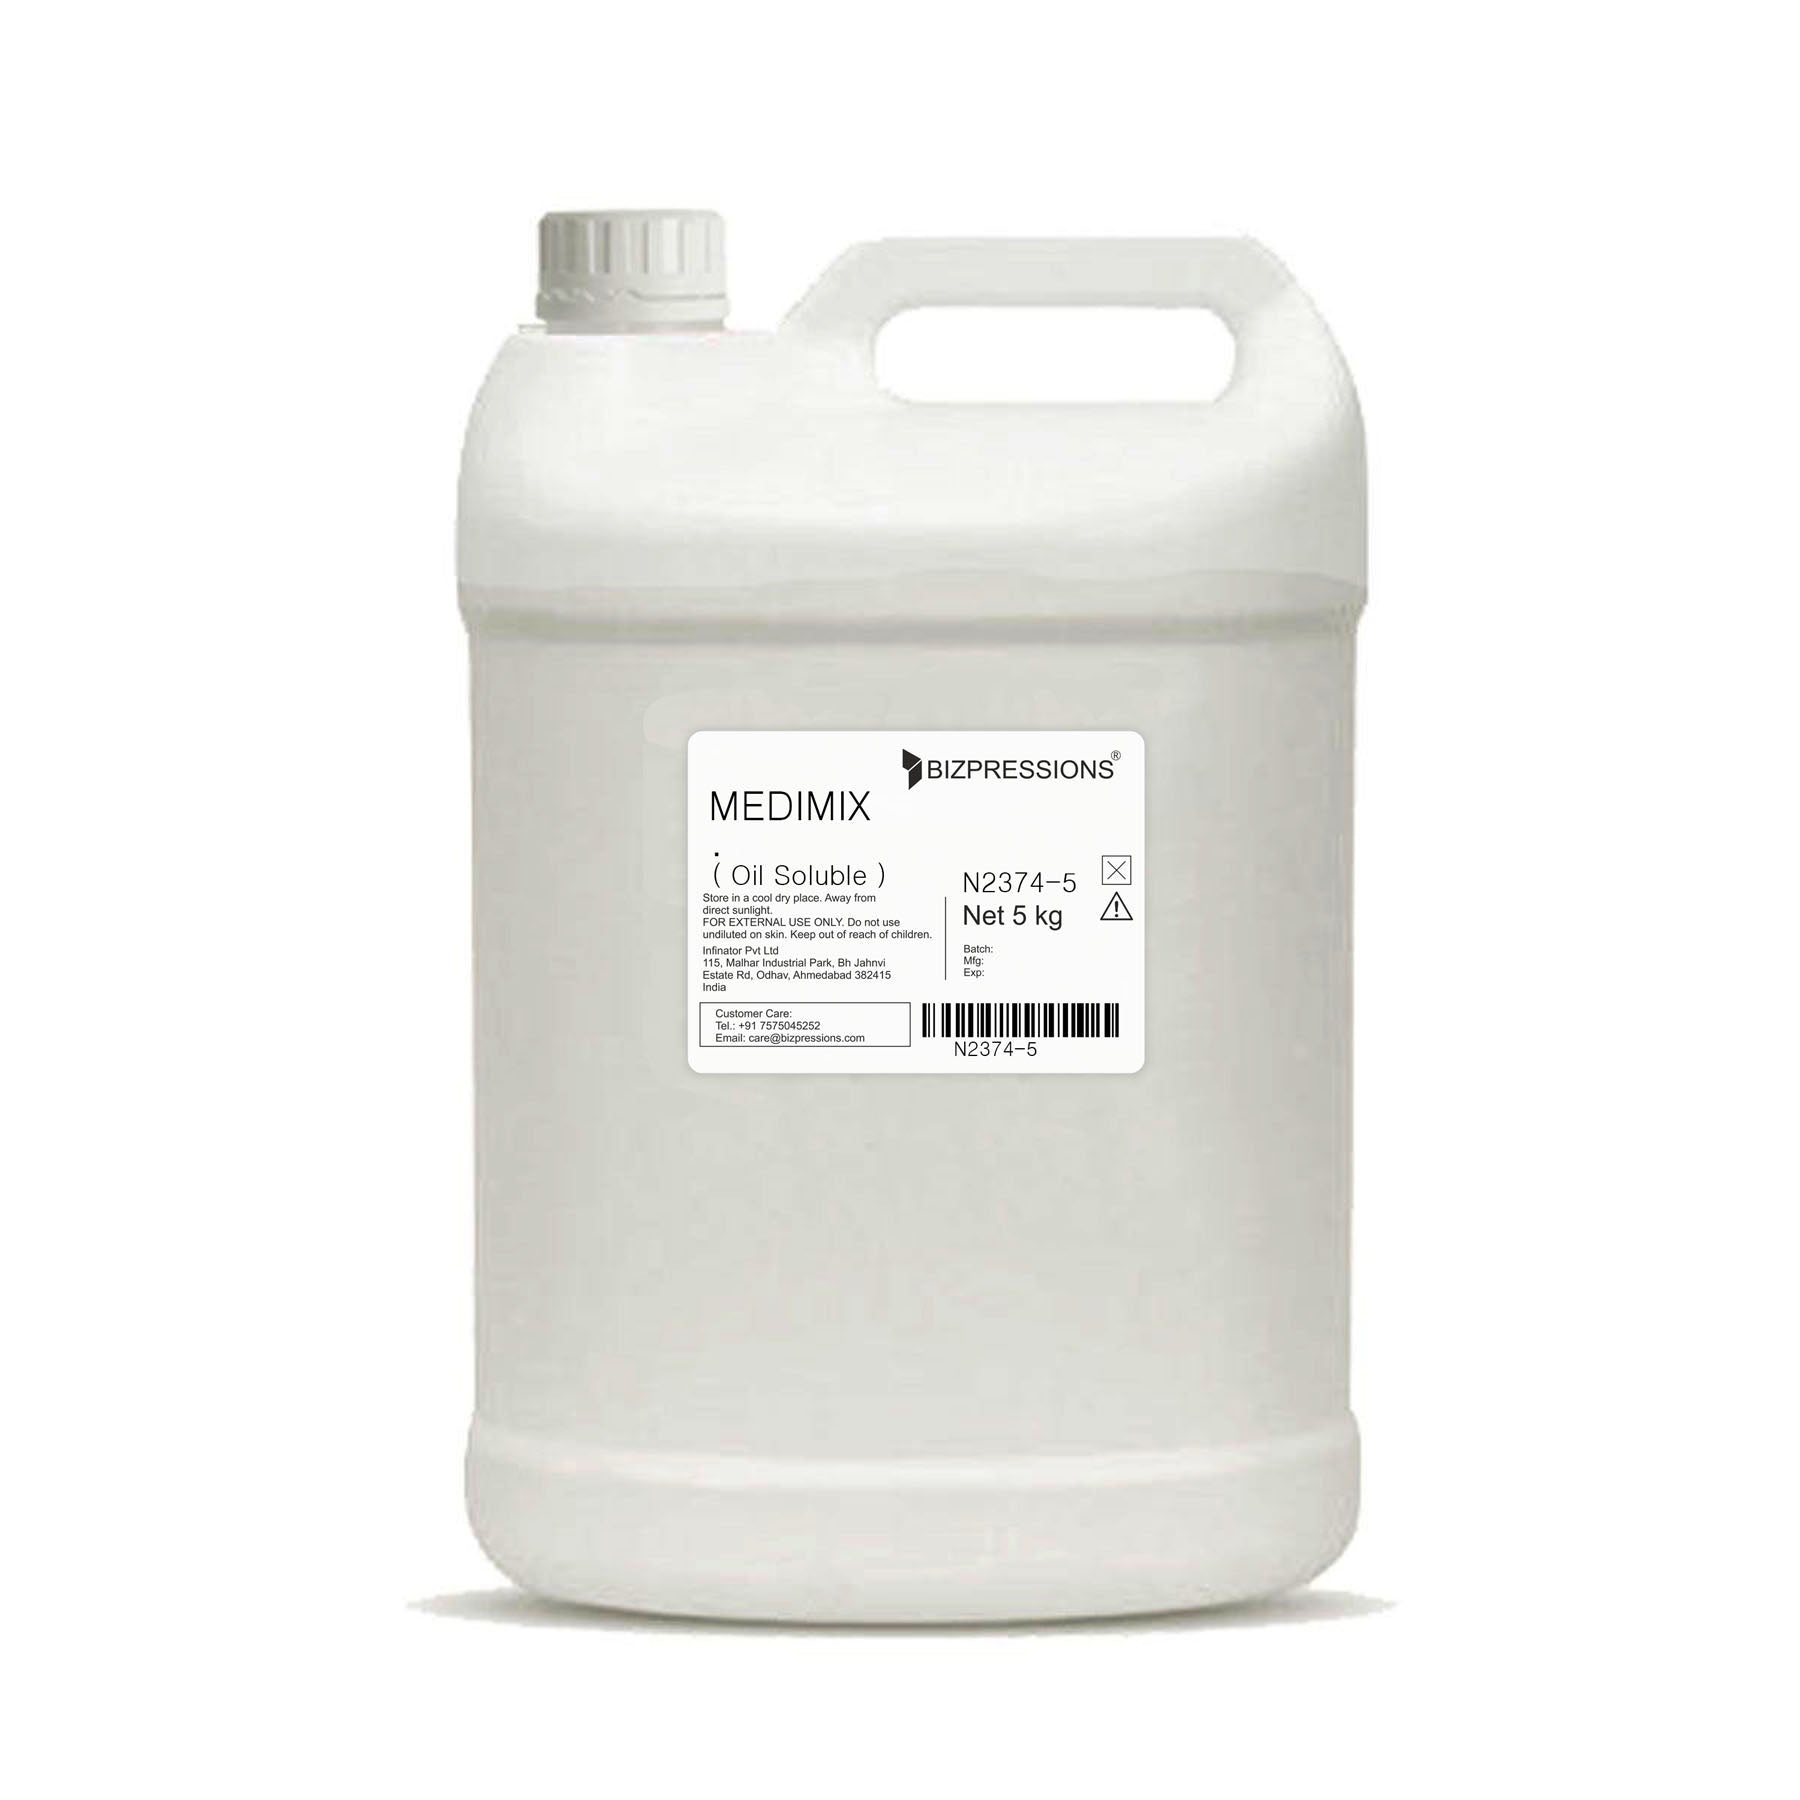 MEDIMIX - Fragrance ( Oil Soluble ) - 5 kg